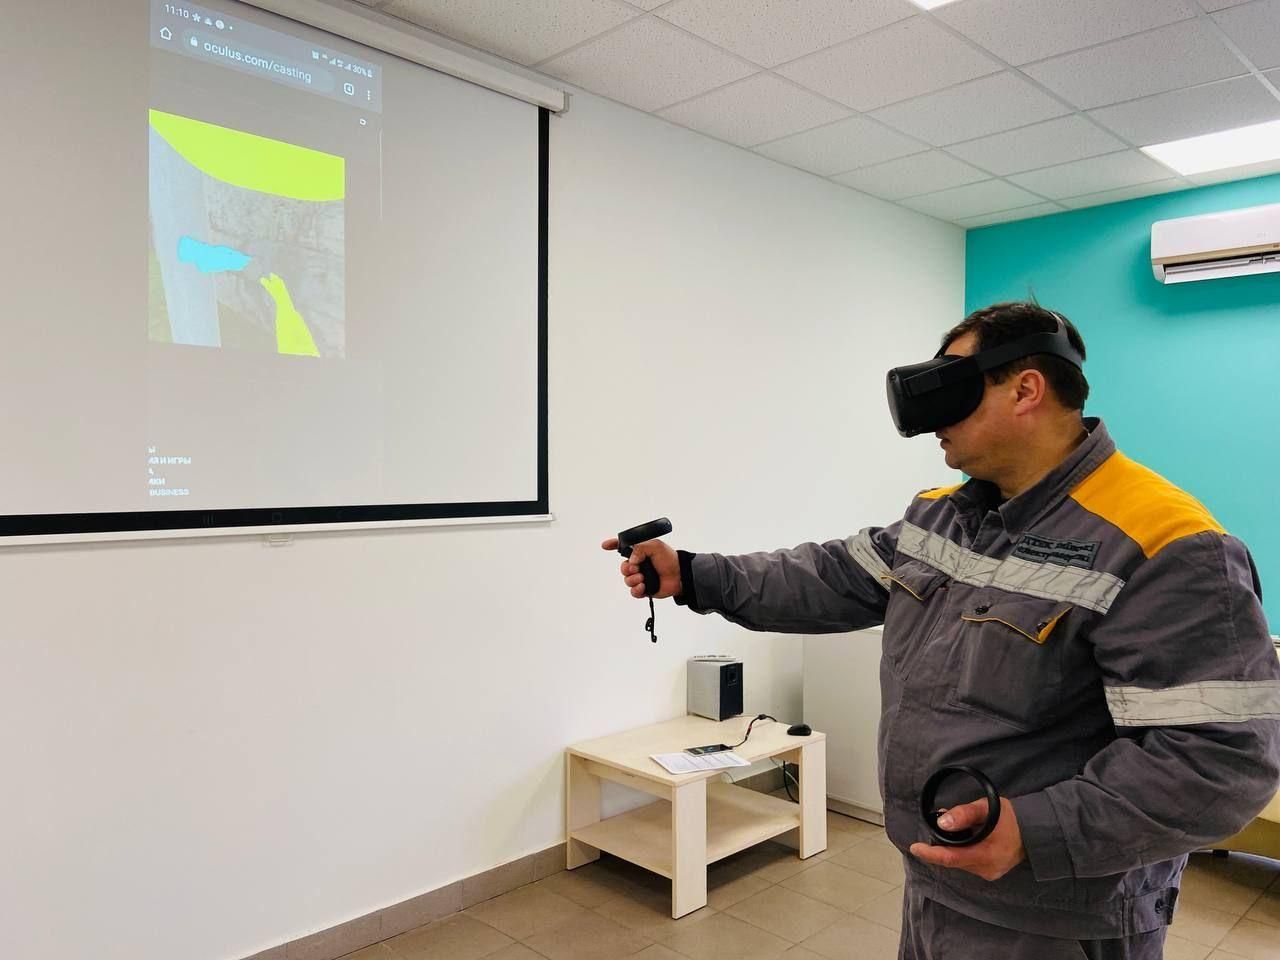 ДТЭК Сети обучает электромонтеров с помощью виртуальной реальности